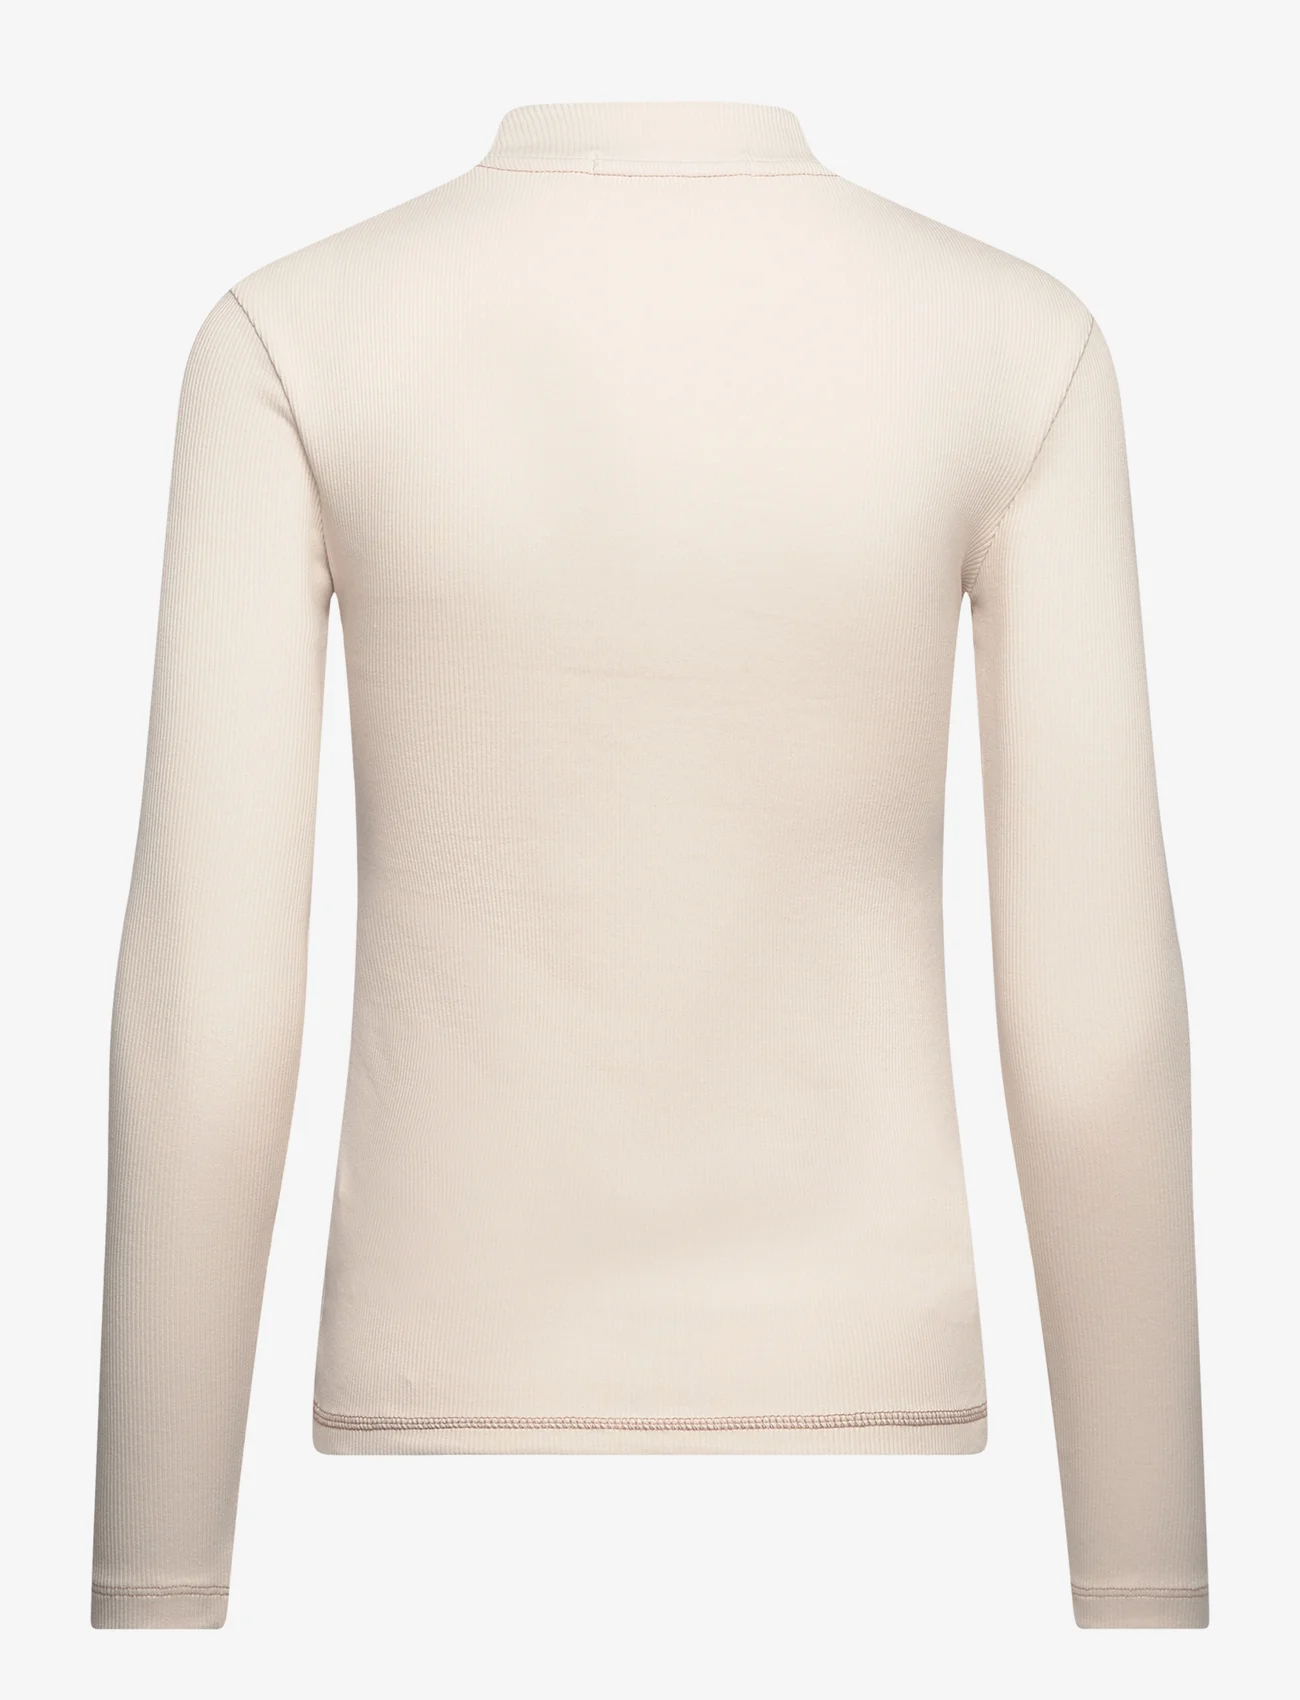 Calvin Klein Jeans - HERO MONOLOGO RIB LONG SLEEVE - t-shirts met lange mouwen - ivory - 1